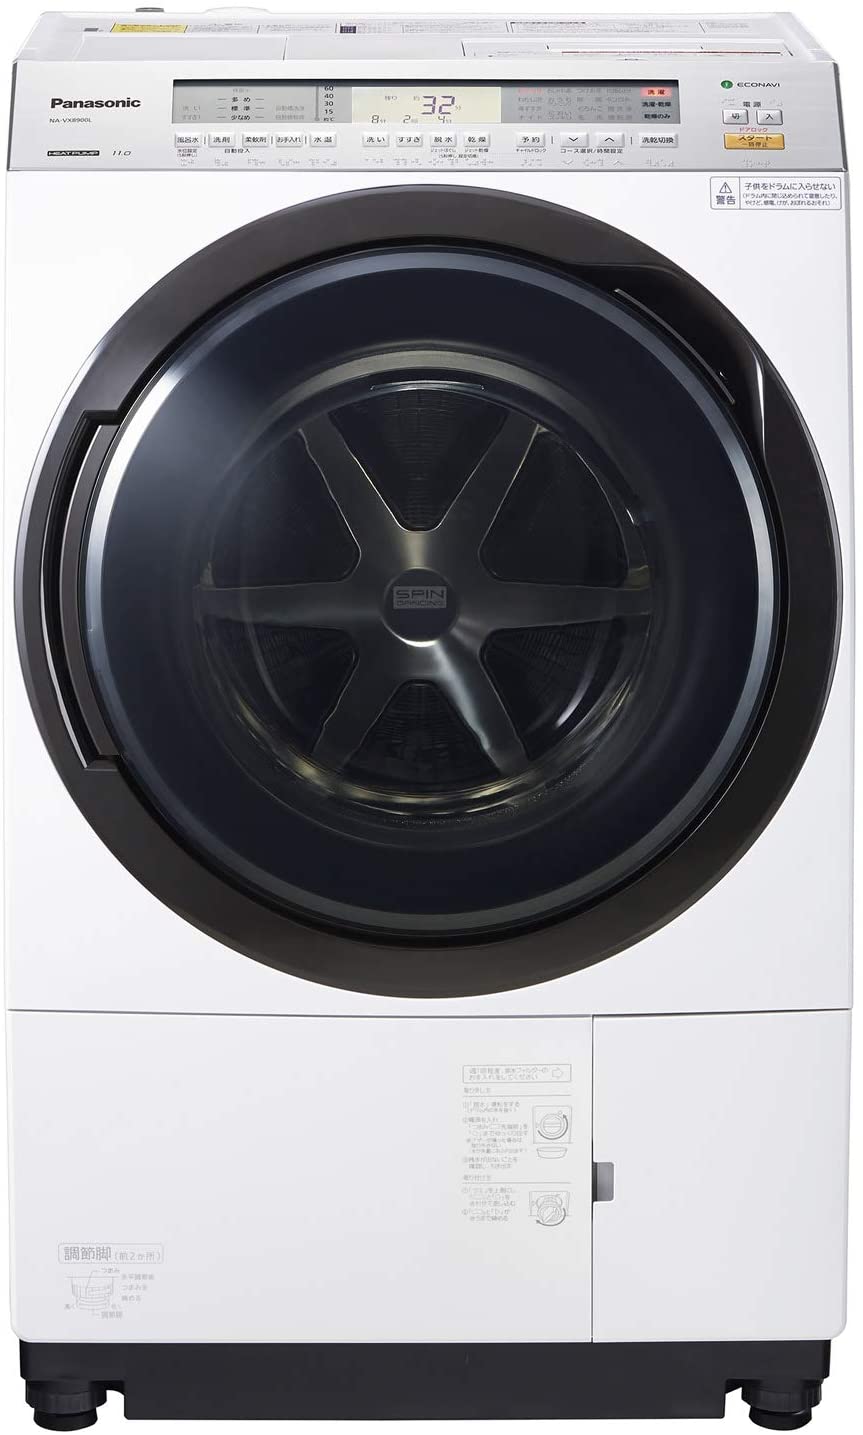 ドラム式洗濯機おすすめ商品：Panasonic(パナソニック) ななめドラム洗濯乾燥機 NA-VX8900L